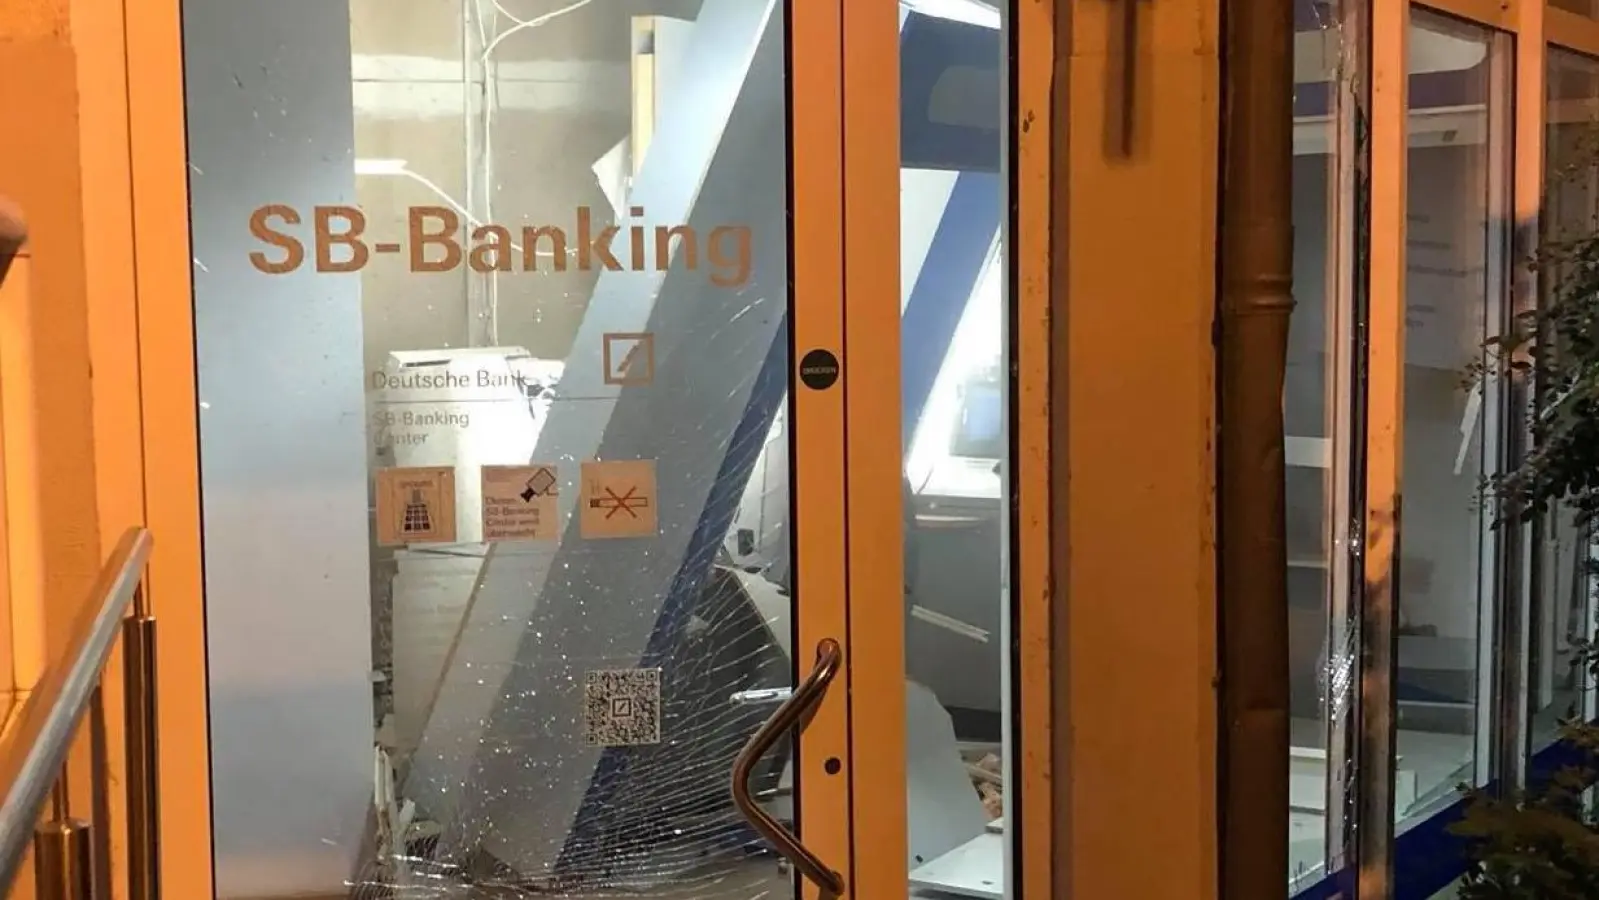 SB-Center der Deutschen Bank bleibt vorerst geschlossen (Foto: taucha-kompakt.de)